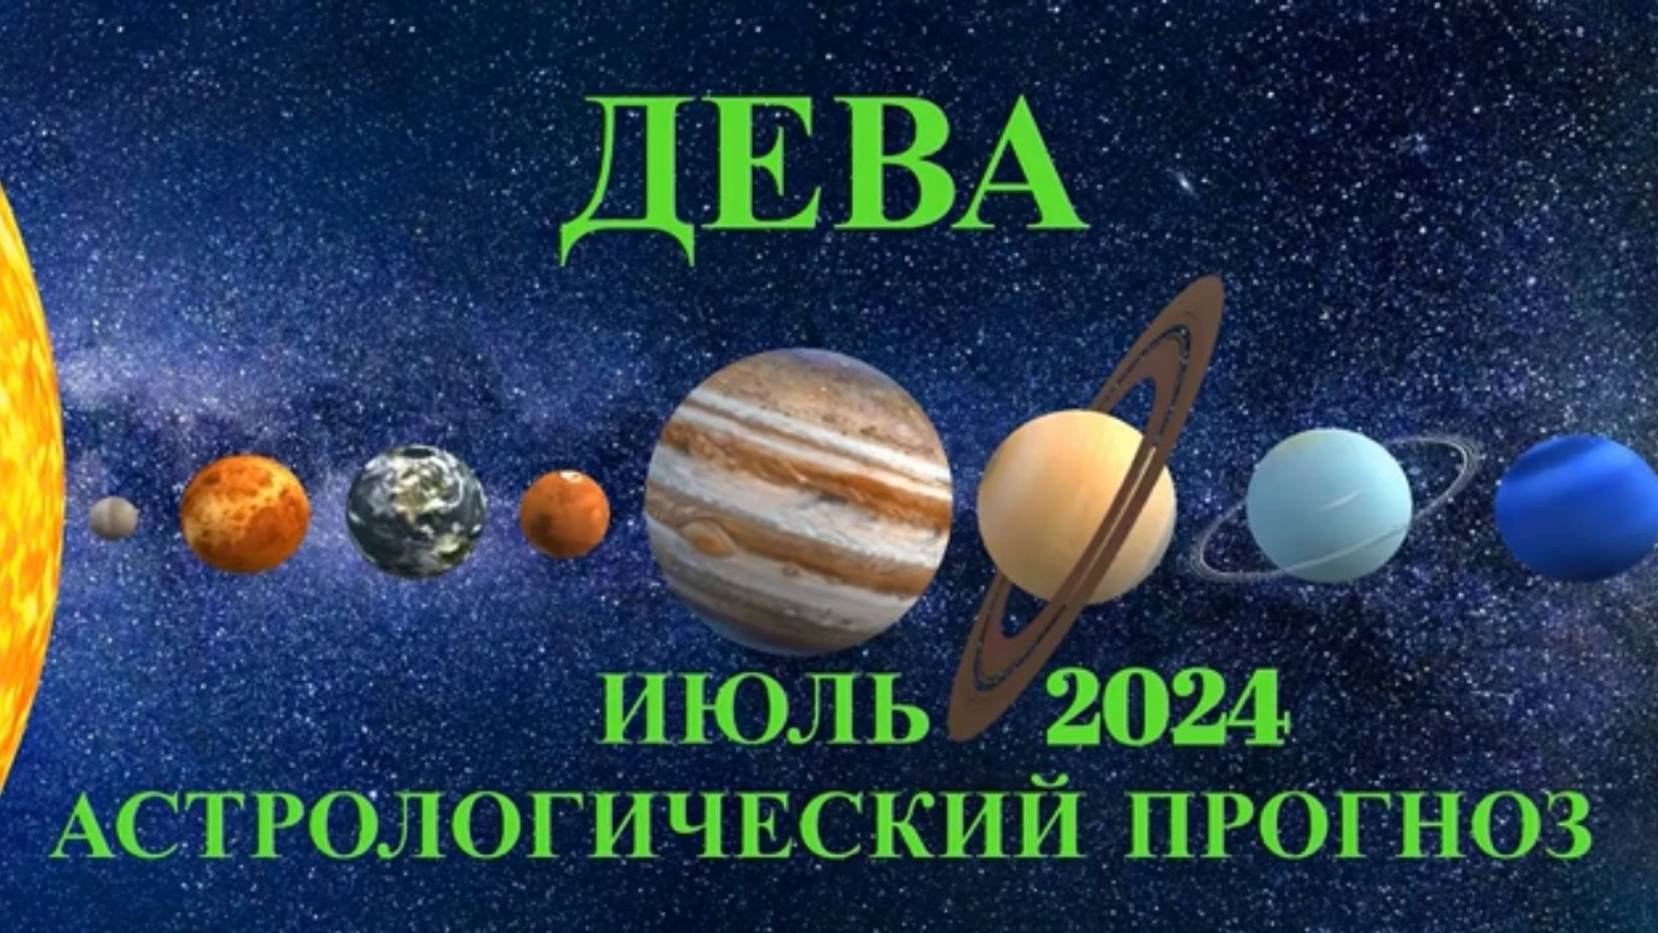 ДЕВА - АСТРОЛОГИЧЕСКИЙ ПРОГНОЗ на ИЮЛЬ 2024 года!!!